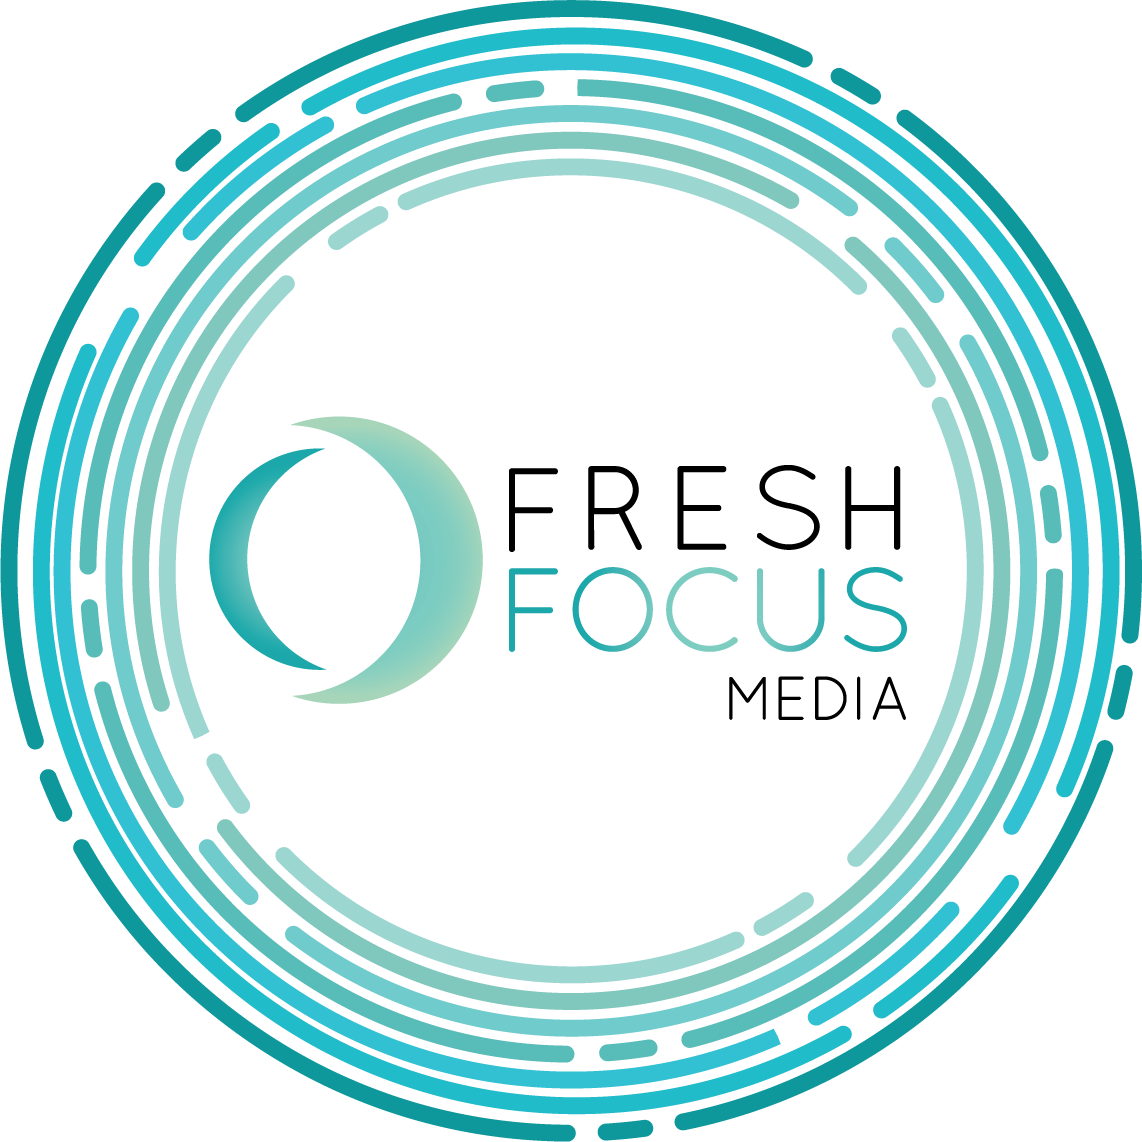 Fresh Focus Media Infographic Circle